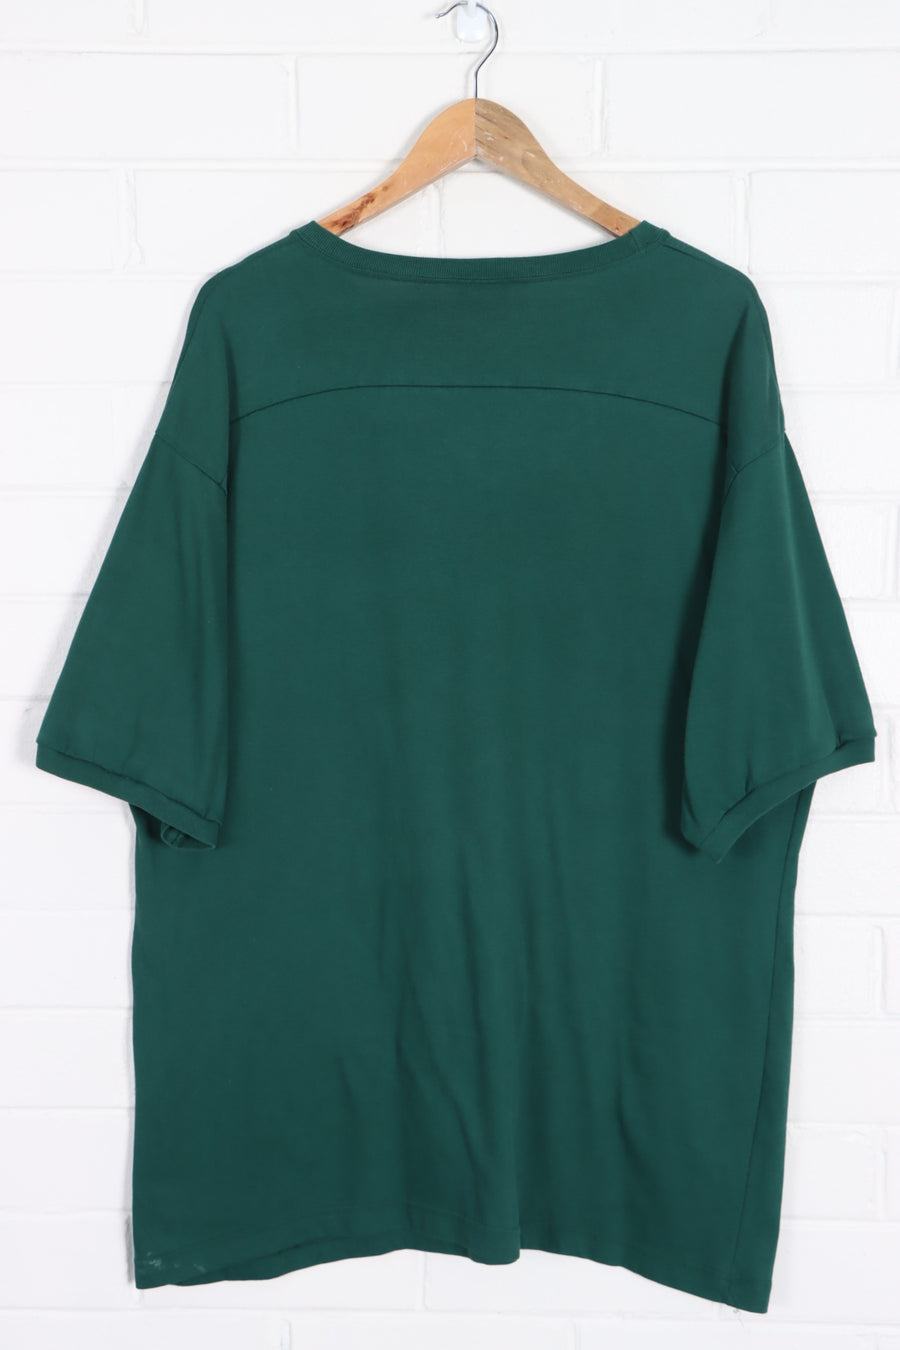 RALPH LAUREN POLO 67 Green 3/4 Sleeve T-Shirt (L) - Vintage Sole Melbourne